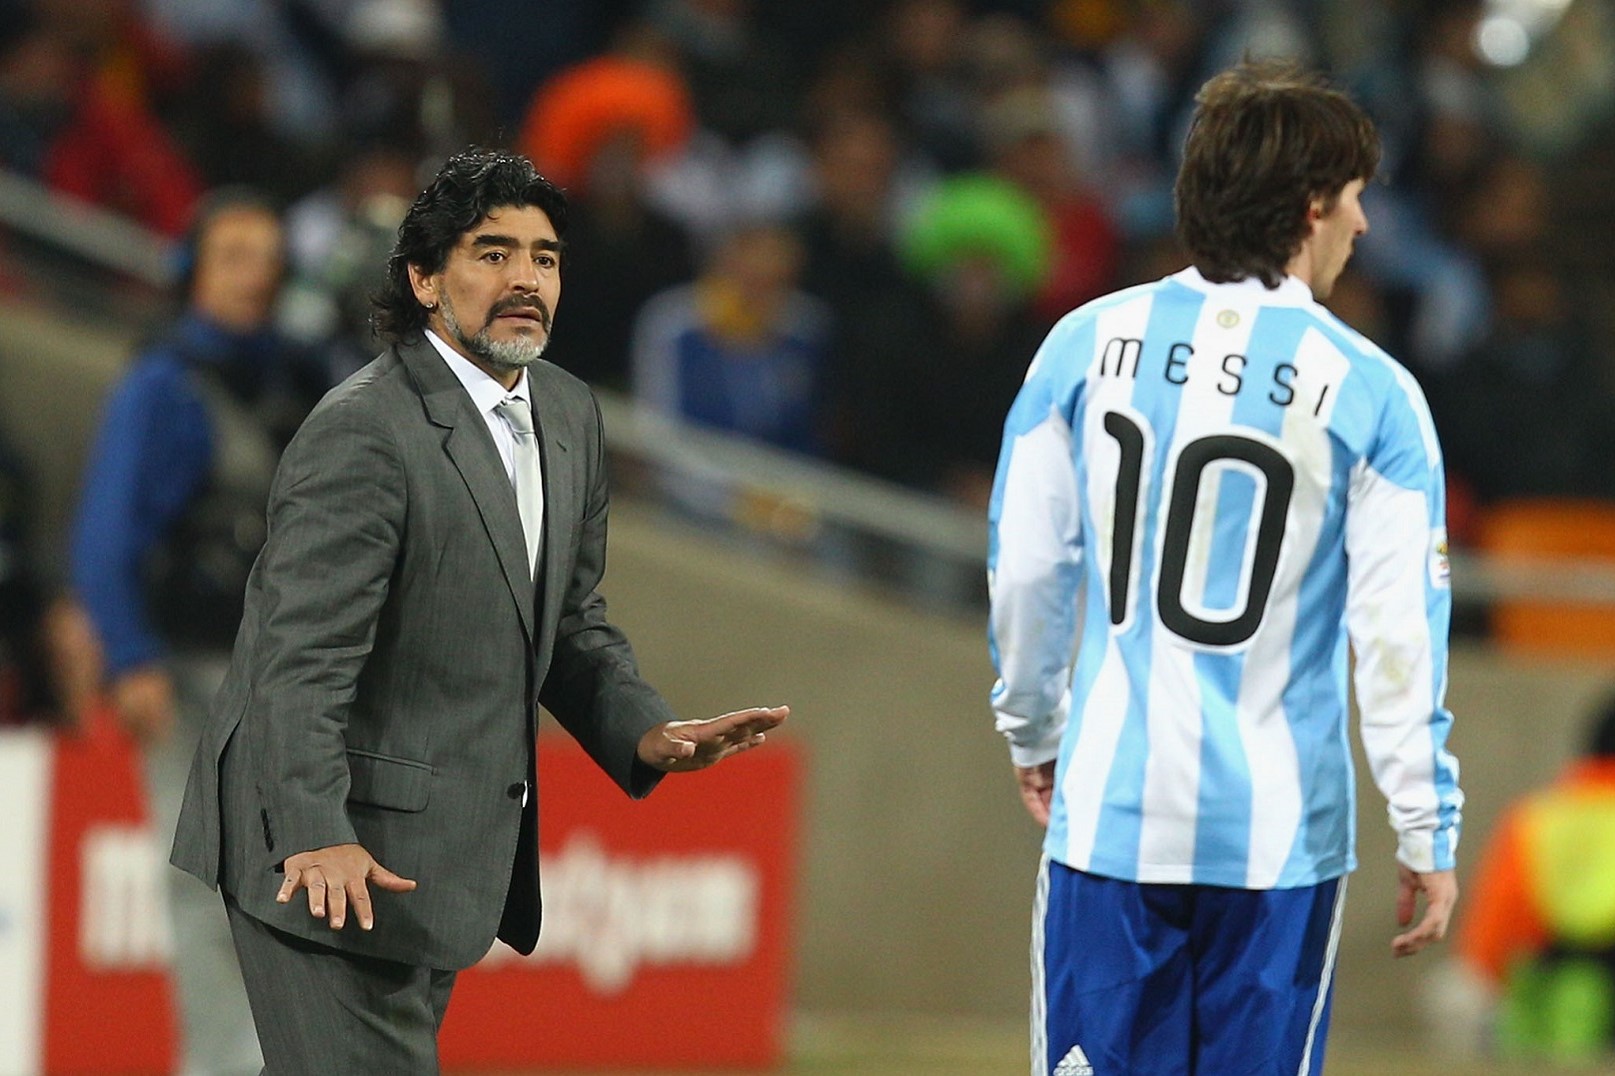 Diego Maradona và những chuyện chưa kể (P2) hình ảnh